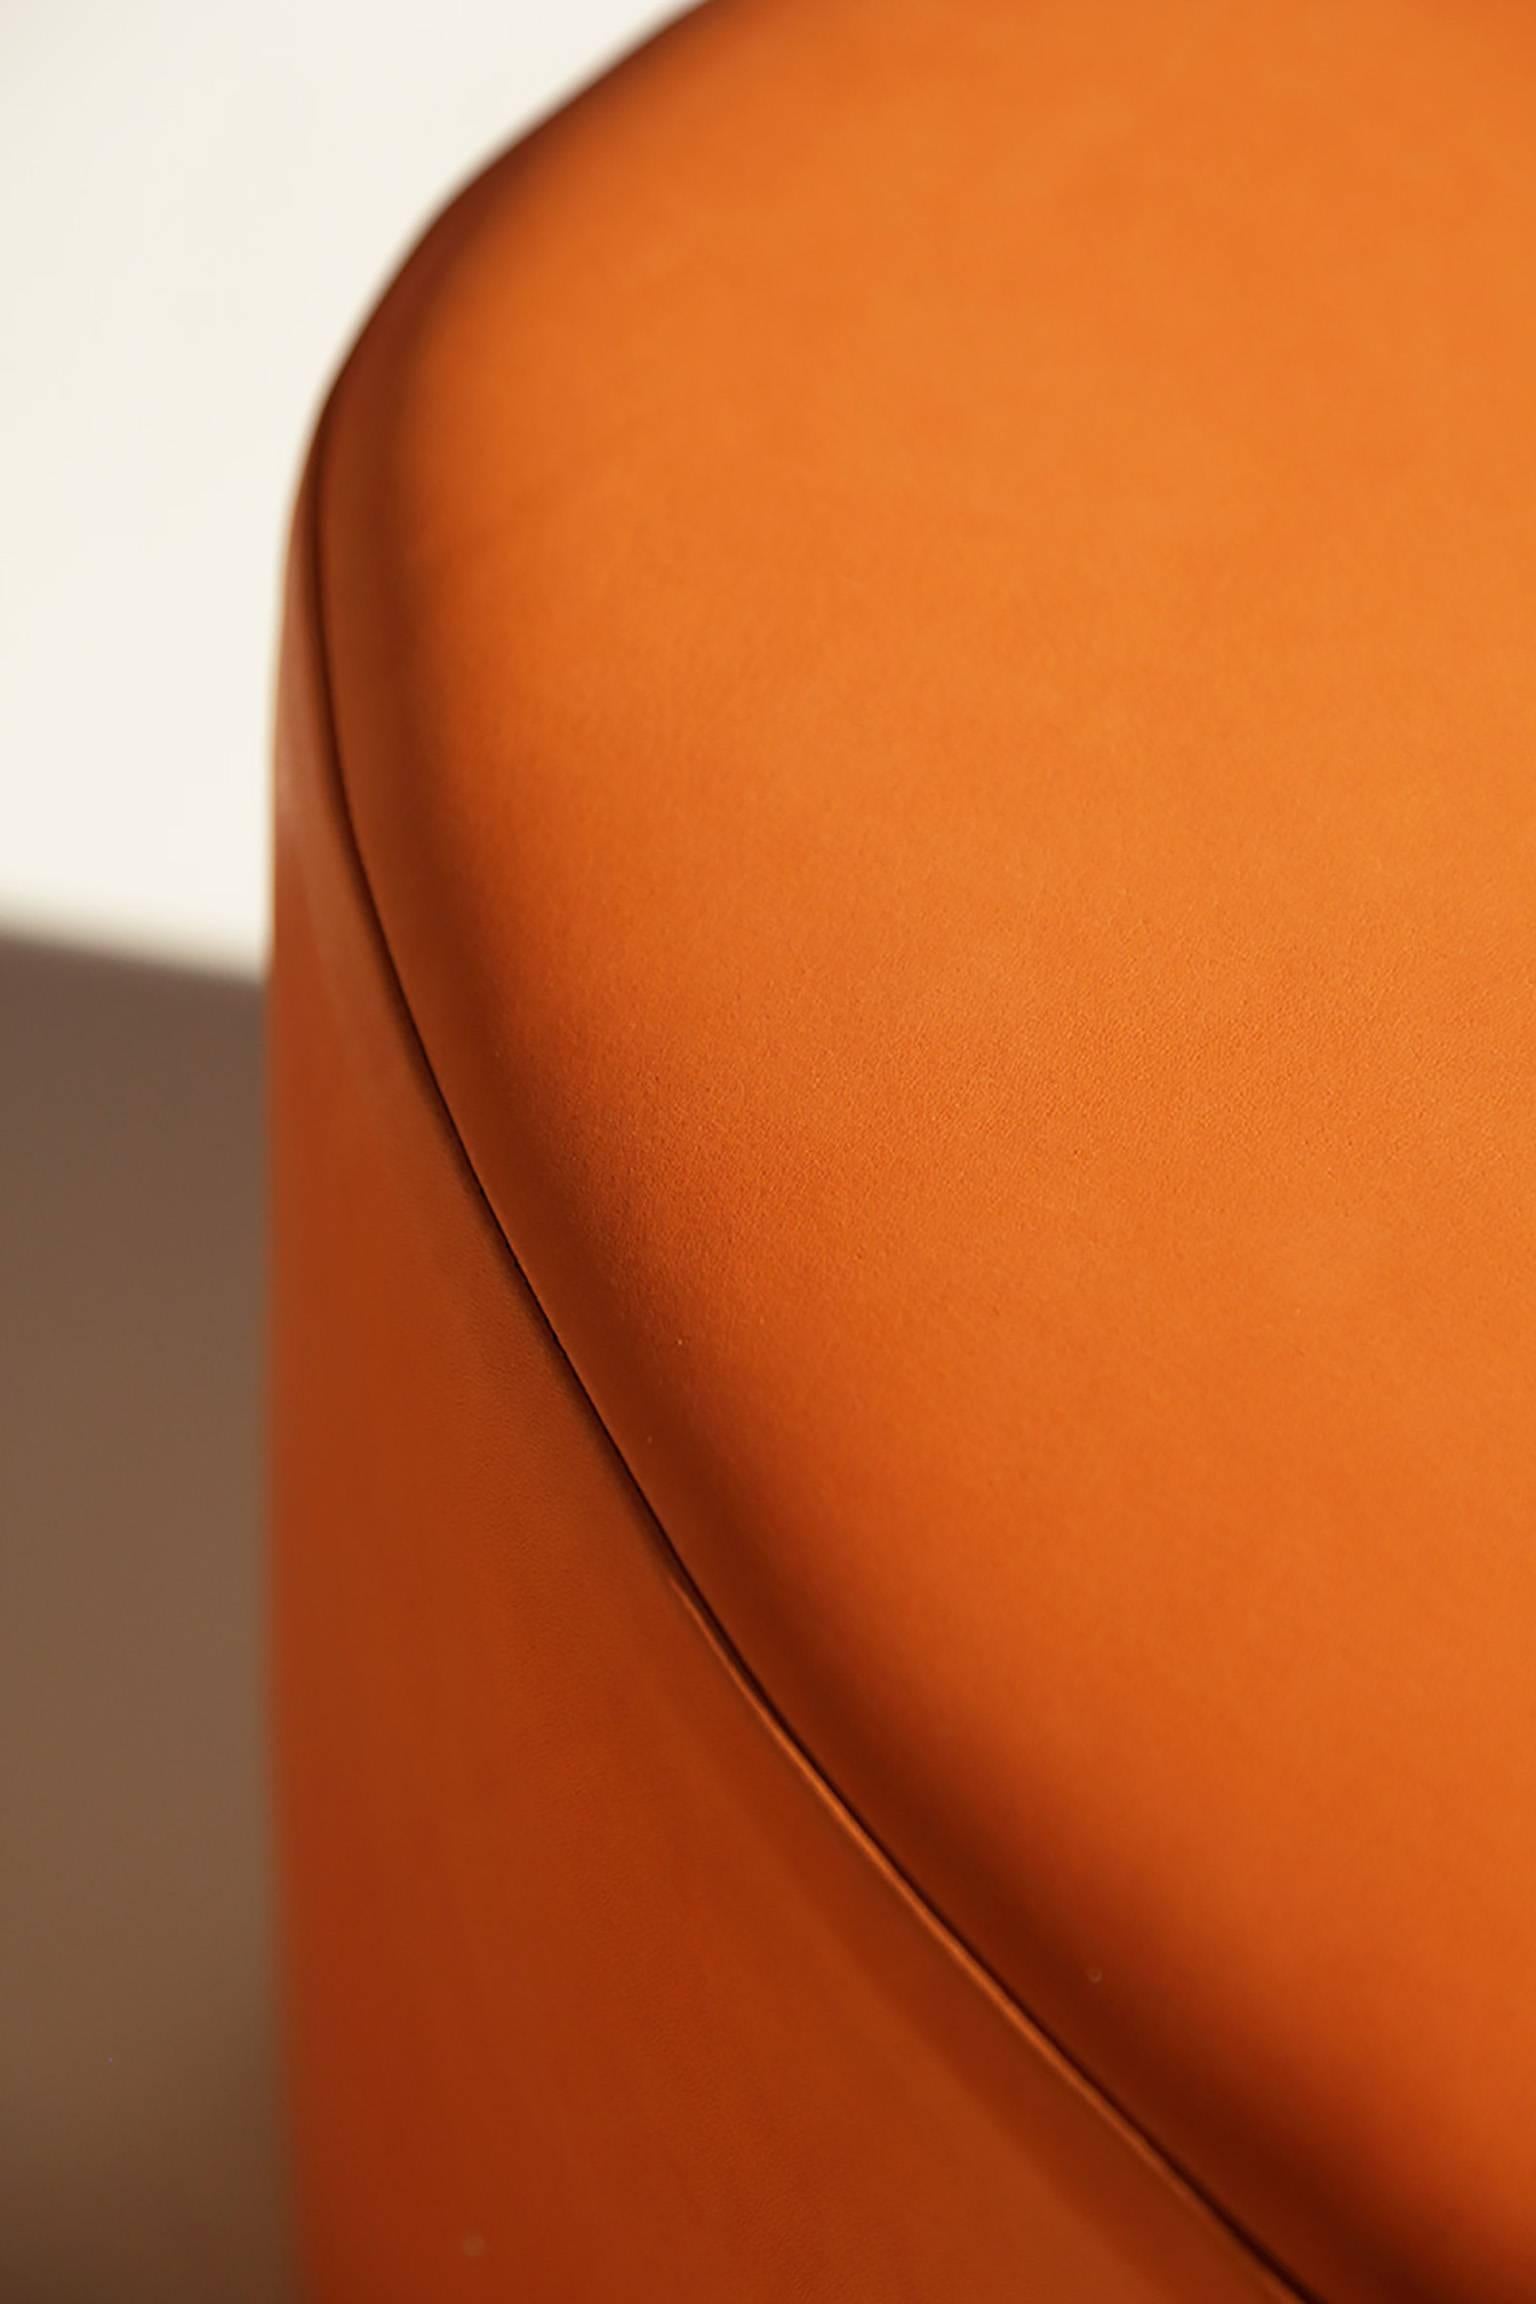 Das gefüllte E, das gefüllte Dreieck und der gefüllte Kreis sind eine eindrucksvolle Zusammenstellung skurriler Skulpturen, die von Gemälden Joan Miros inspiriert sind. Ob zusammen oder einzeln ausgestellt, jeder Sitz wirkt wie eine schwungvolle,